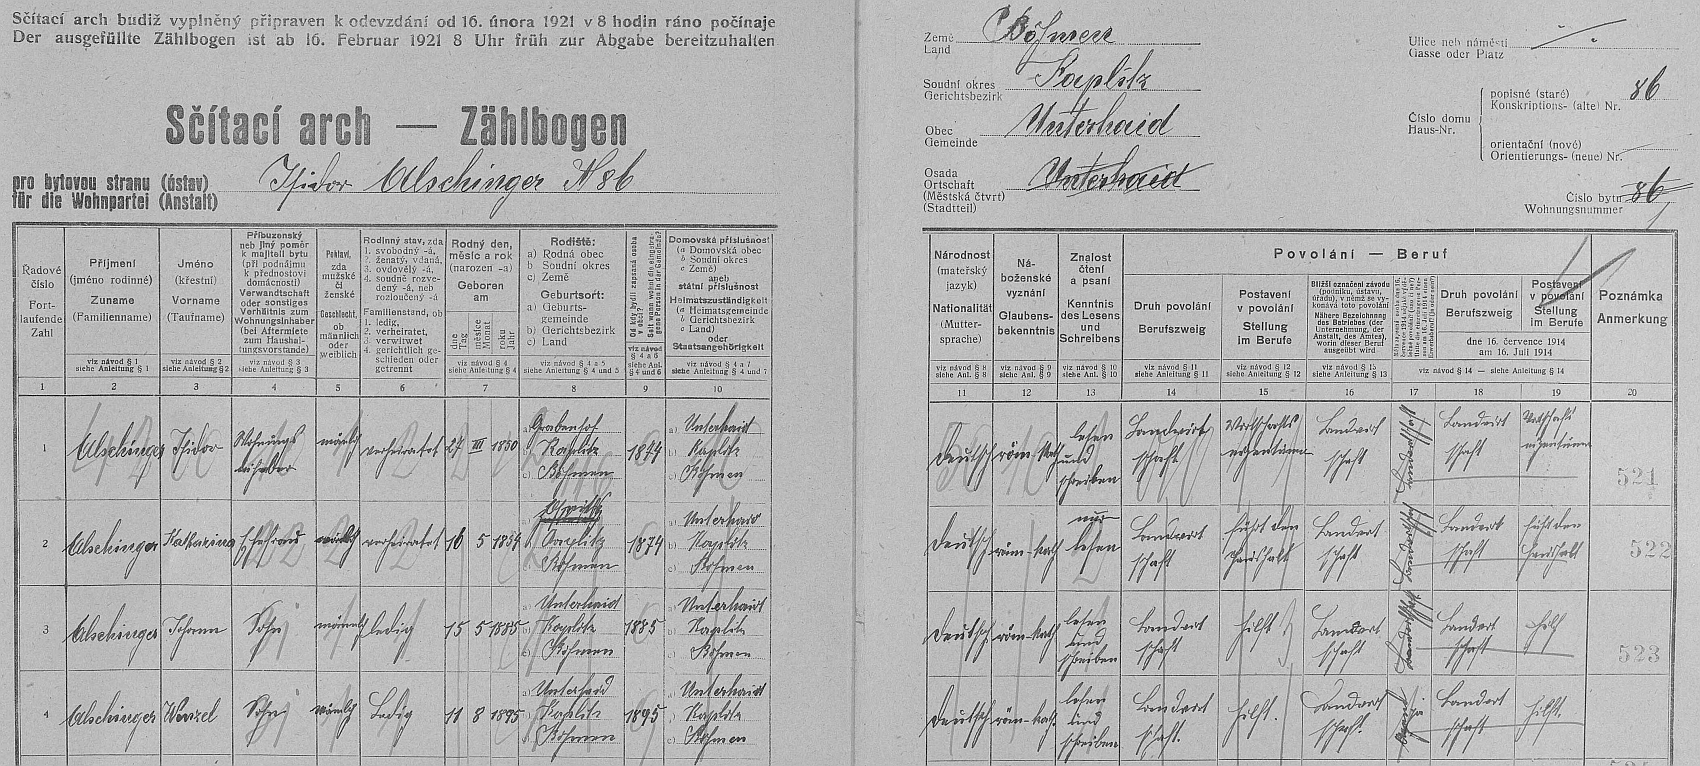 Arch sčítání lidu z roku 1921 pro dům čp. 86 v Dolním Dvořišti s rodinou Alschingerovou včetně jejího budoucího manžela